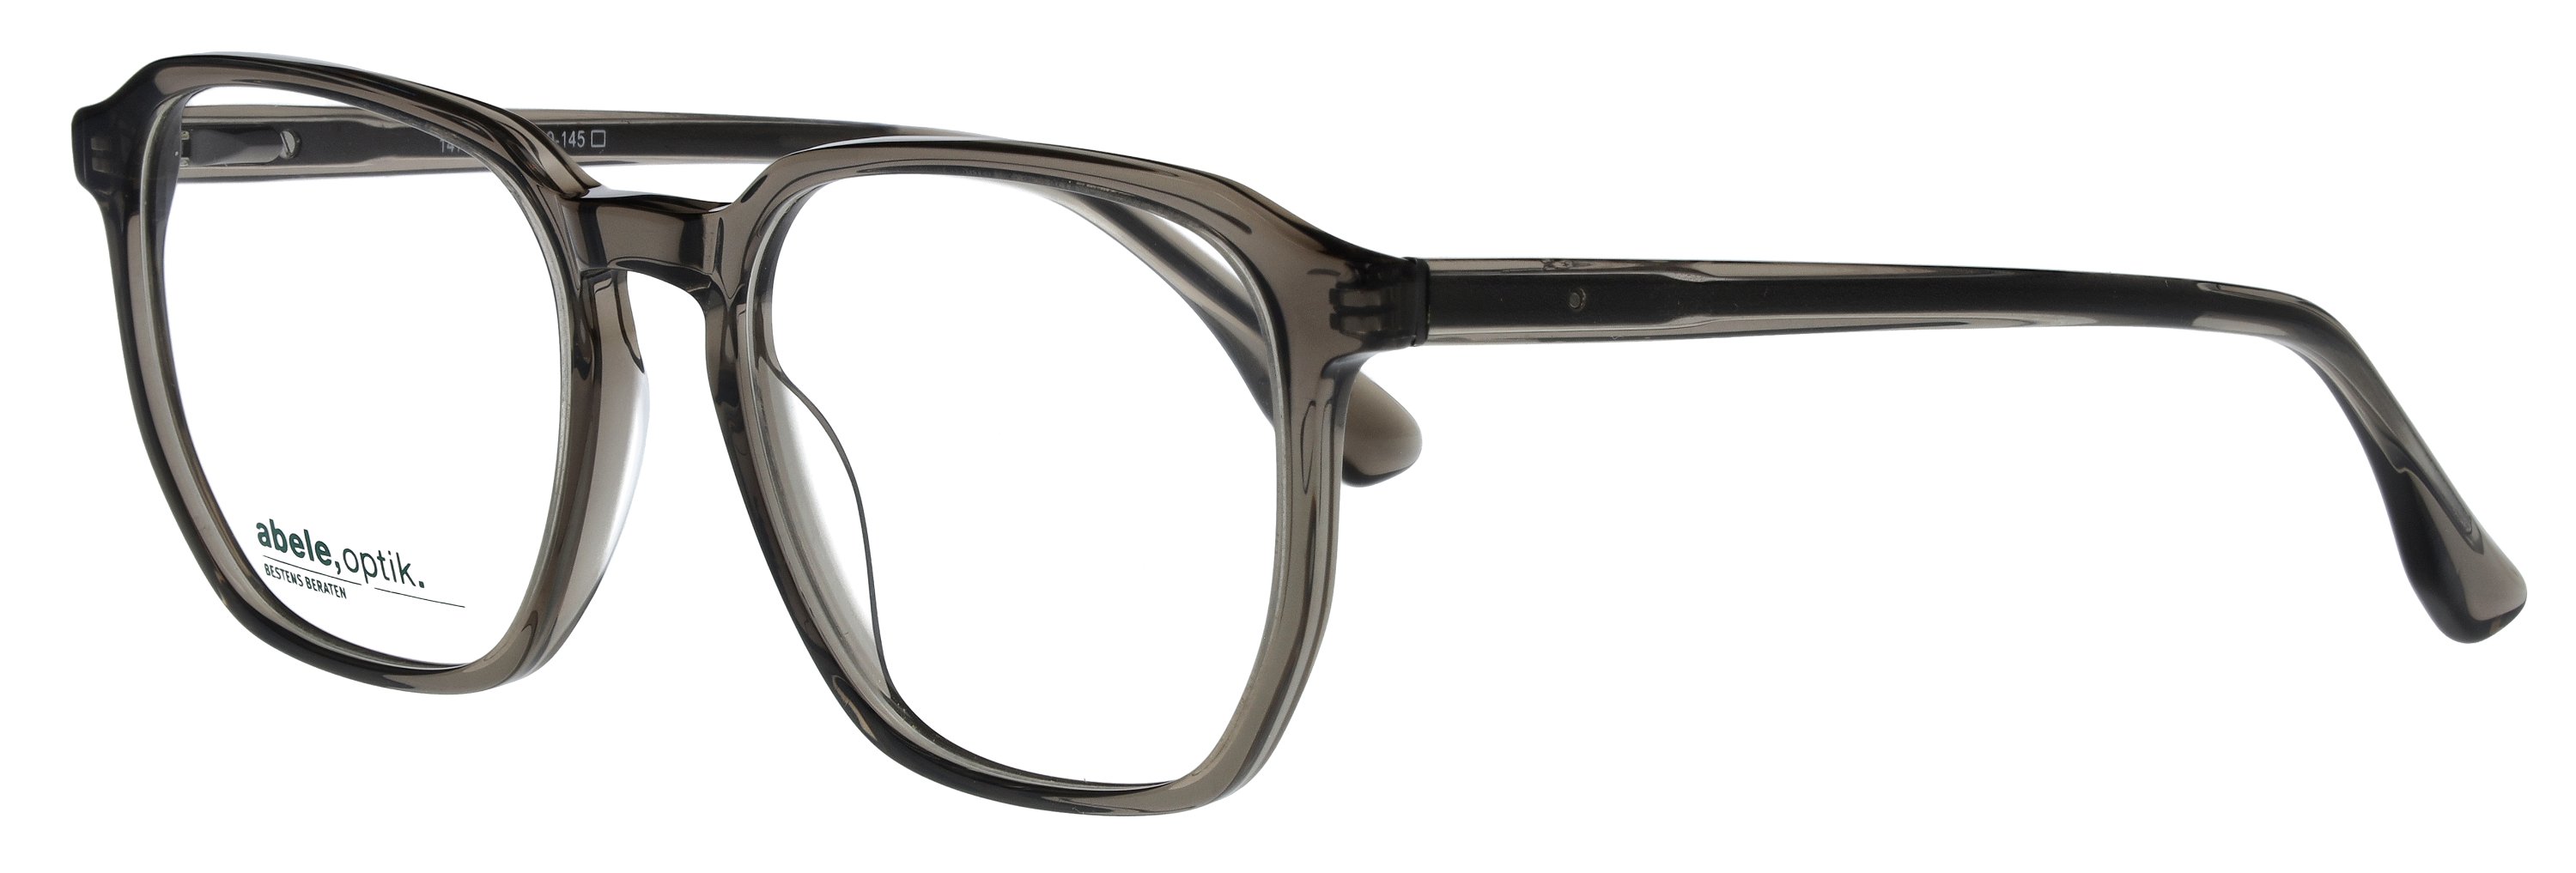 Das Bild zeigt die Korrektionsbrille 147961 von der Marke Abele Optik in grau transparent.